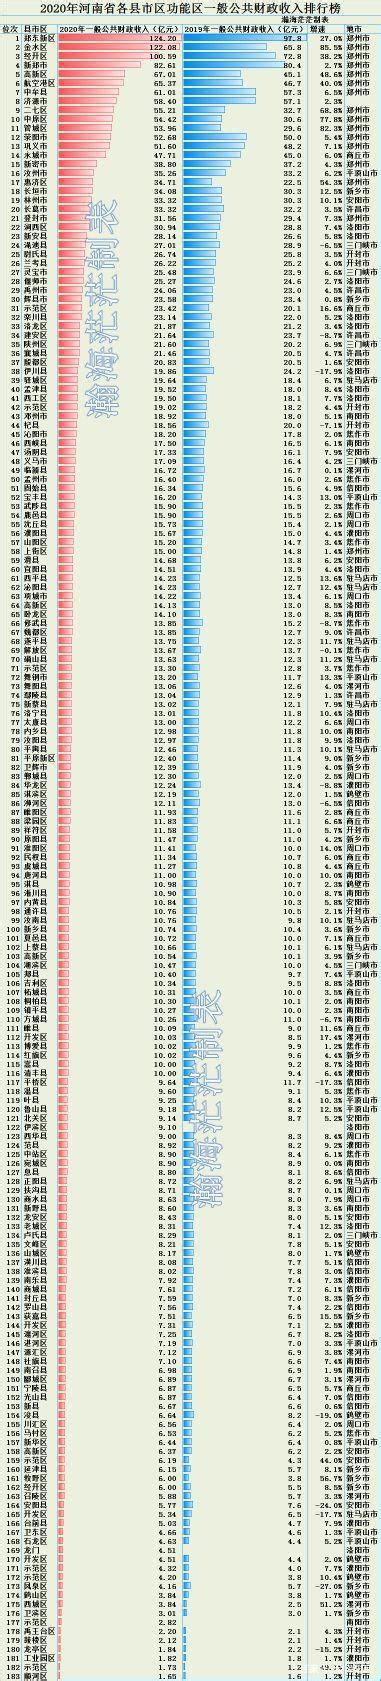 河南省18个地市及183个县市区财政收入排行榜 郑州1259.38亿元排第1_河南数据_聚汇数据